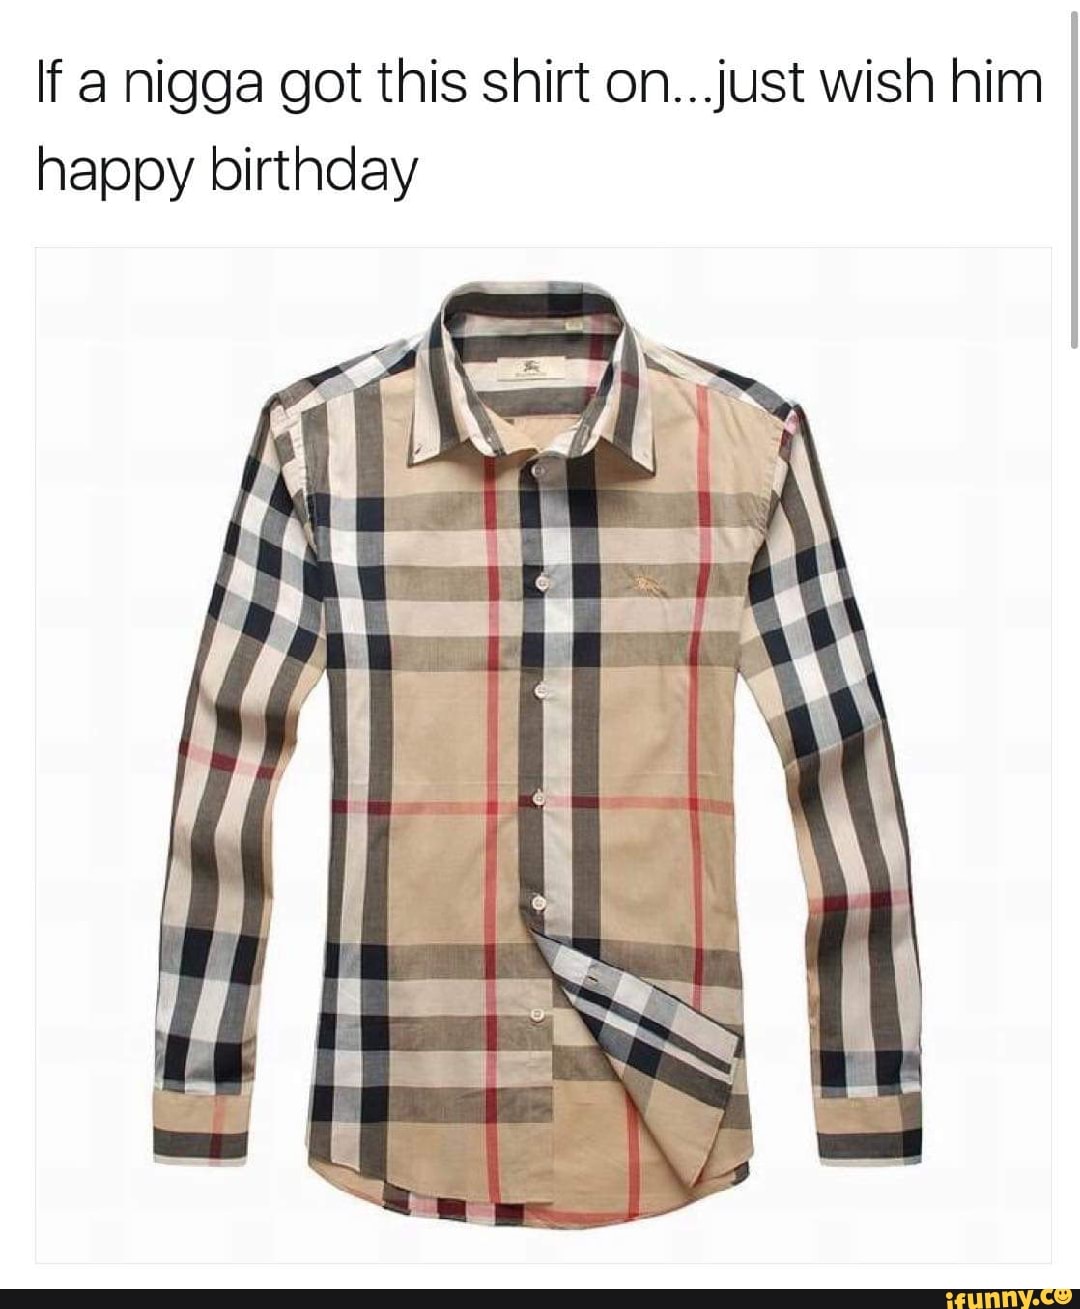 If a nigga got this shirt on...just wish him happy birthday - iFunny